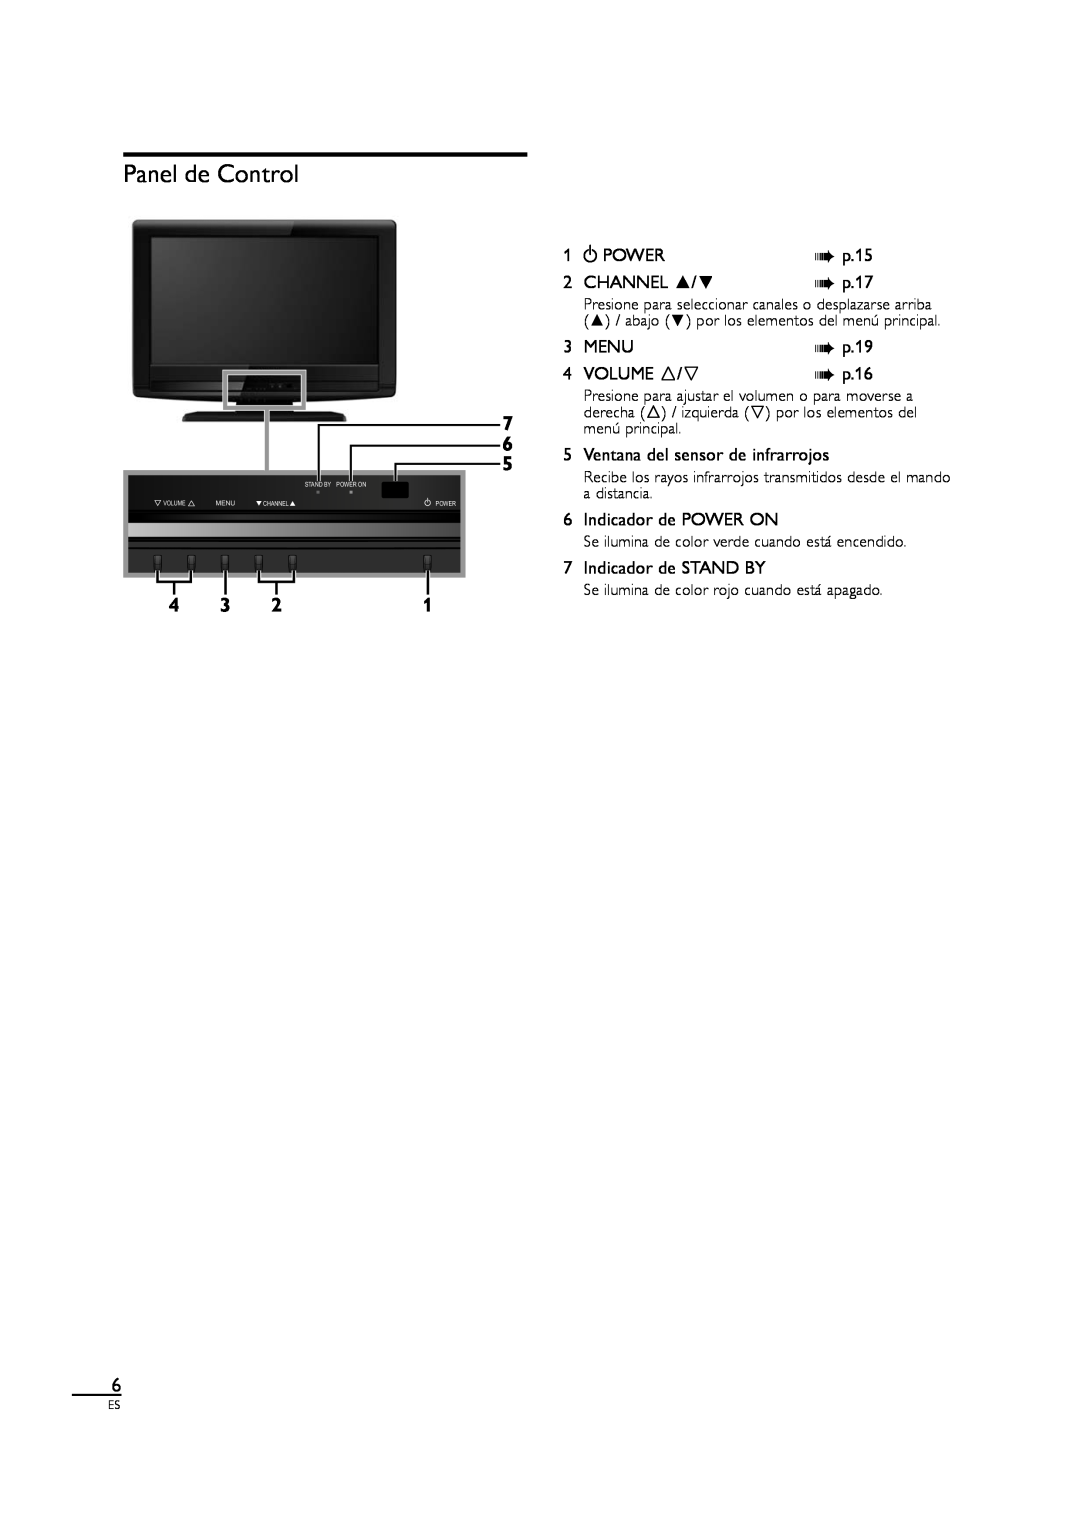 Sylvania LC190SL1 Panel de Control, Ventana del sensor de infrarrojos, Indicador de POWER ON, Indicador de STAND BY, p.16 